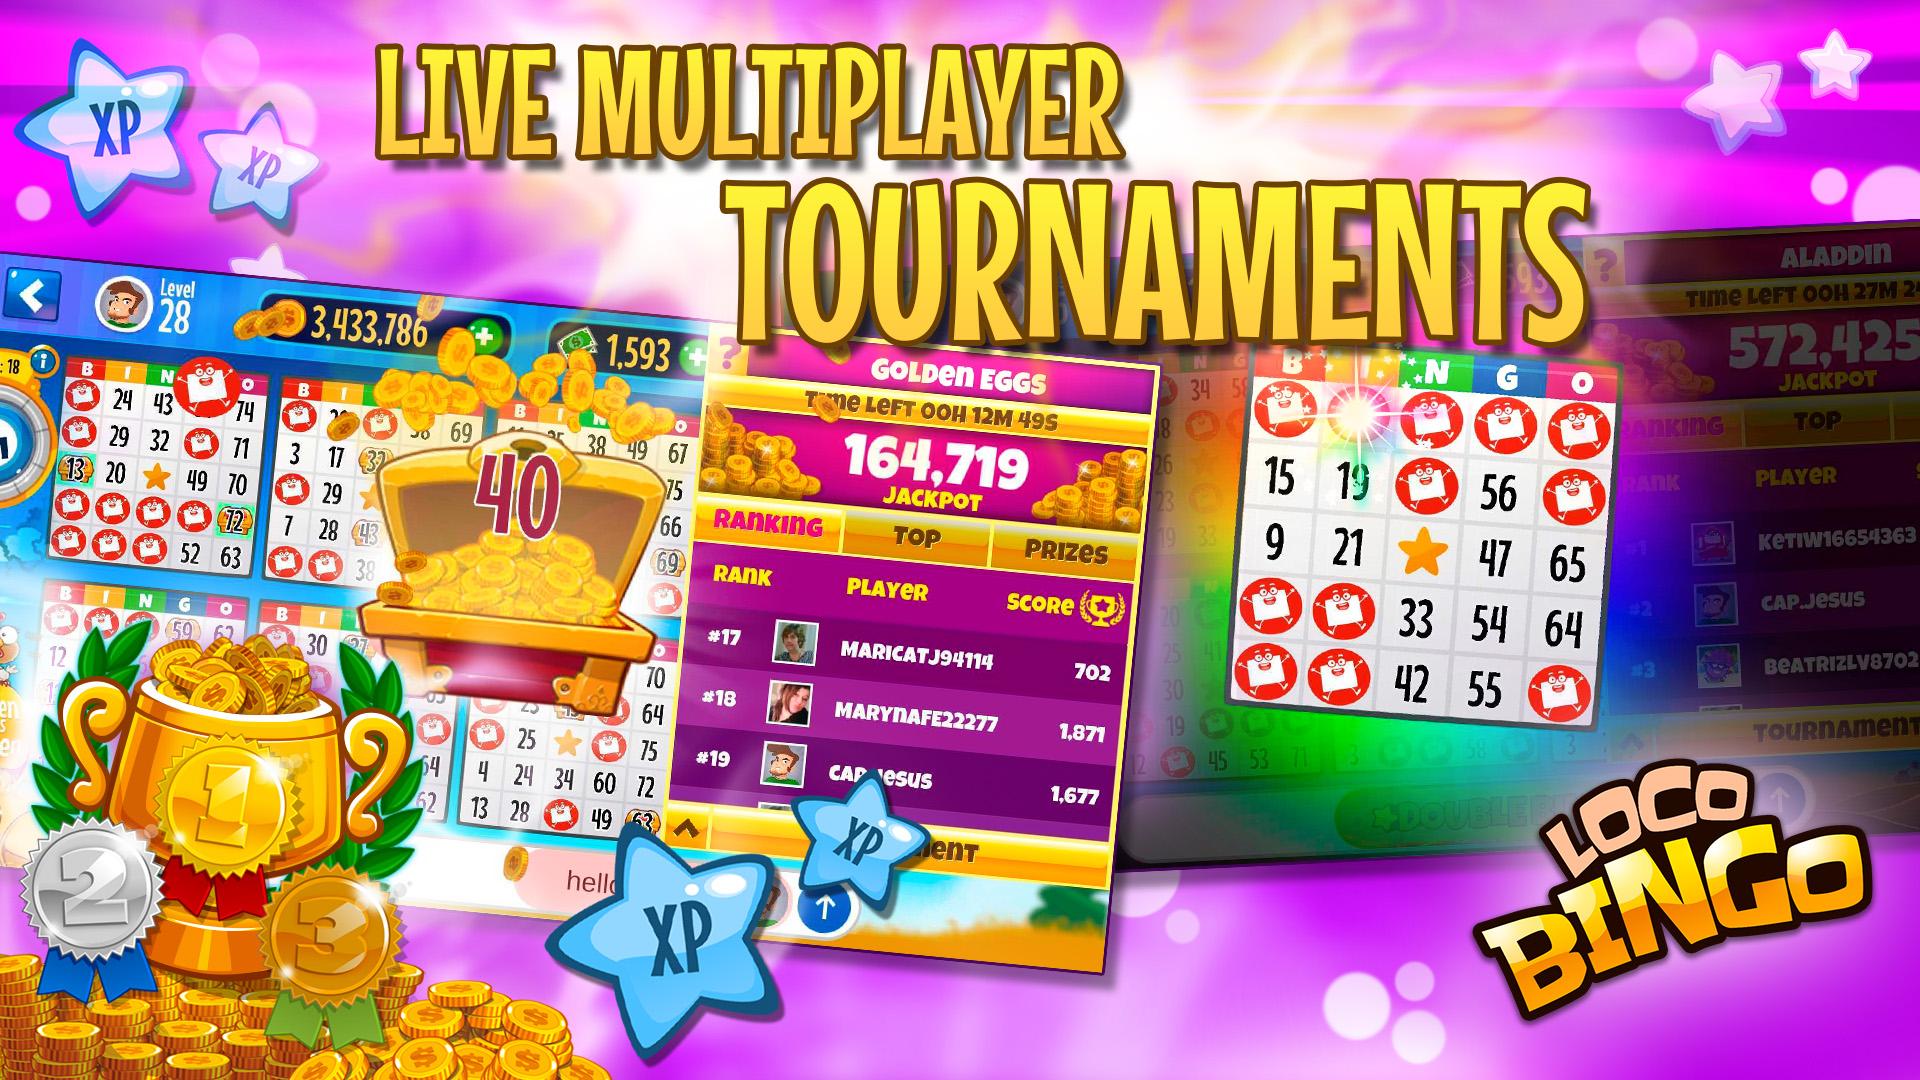 Loco bingo. Casino games slots 2021.6.0 Screenshot 20